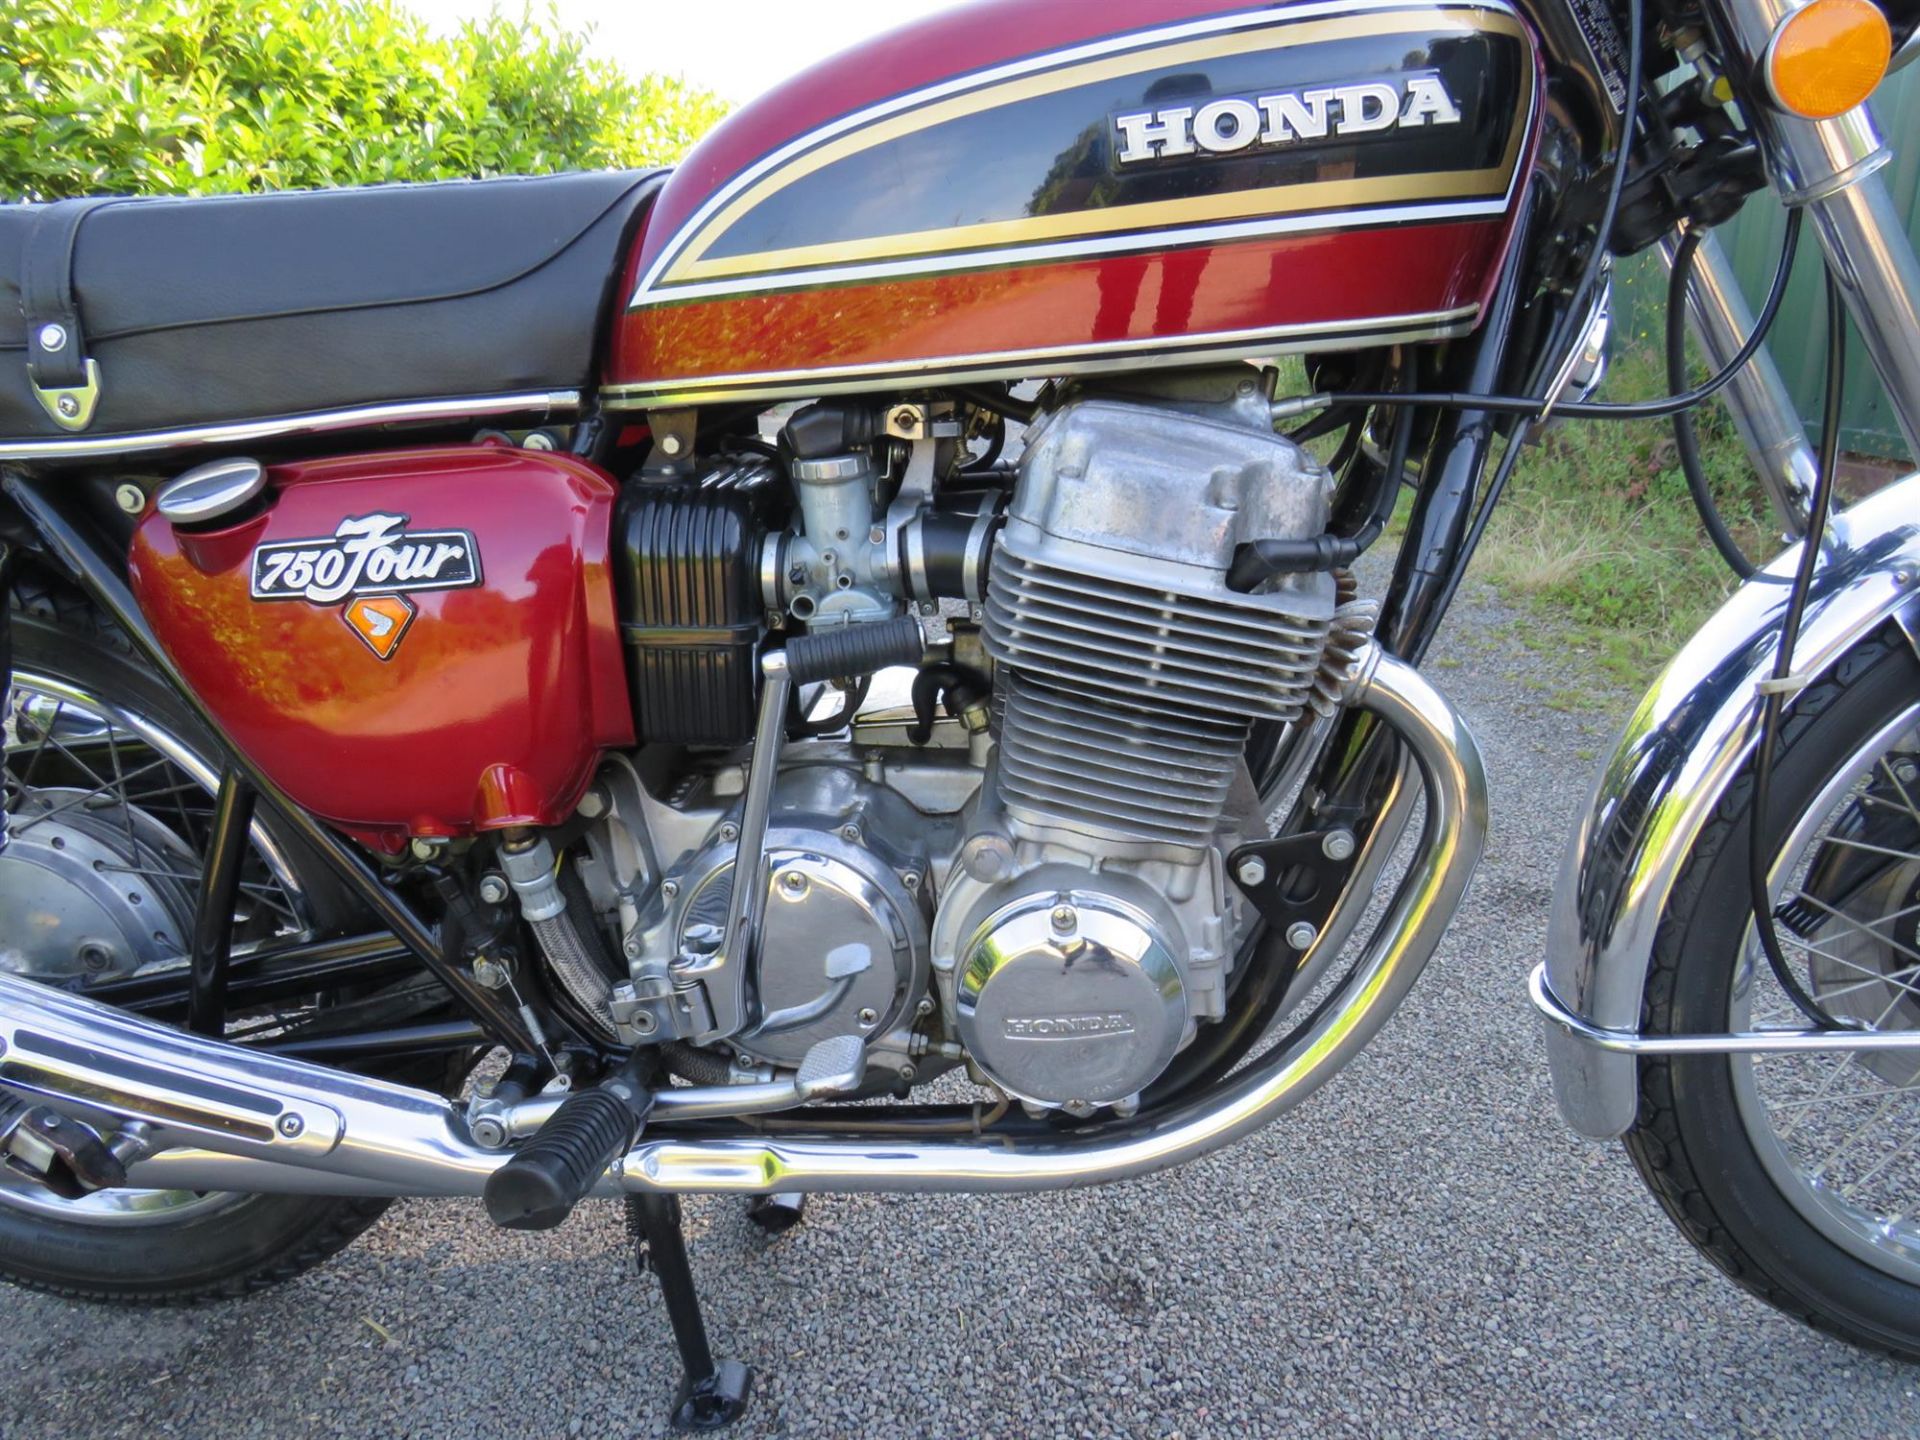 1976 Honda CB750 Four (K6) 736cc - Image 3 of 10